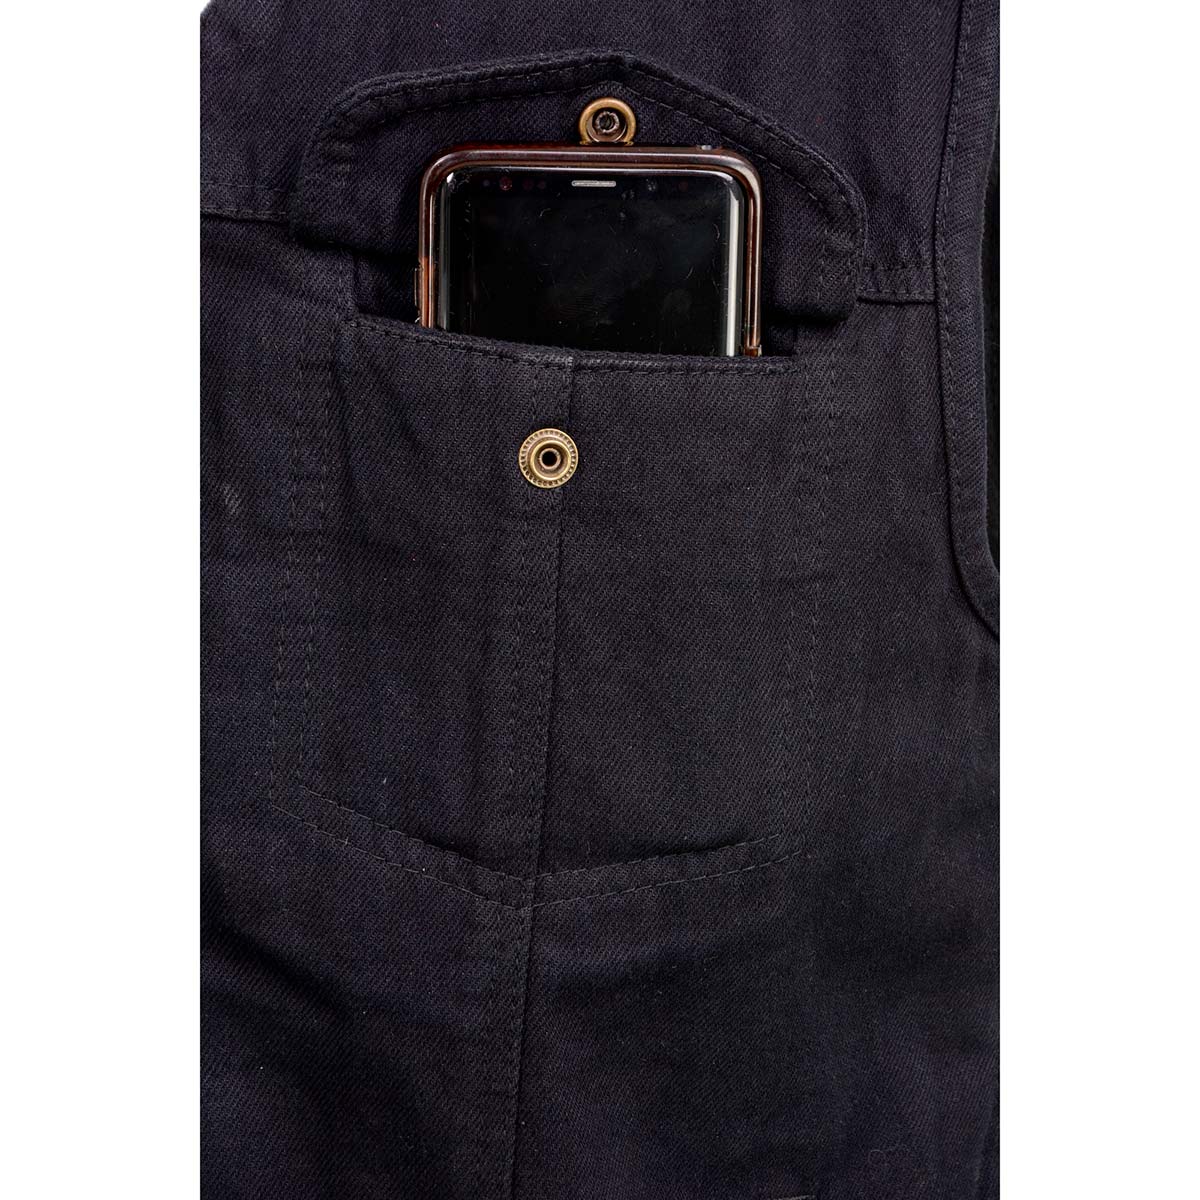 Men's Denim Style Lace Side Trim Leather Vest